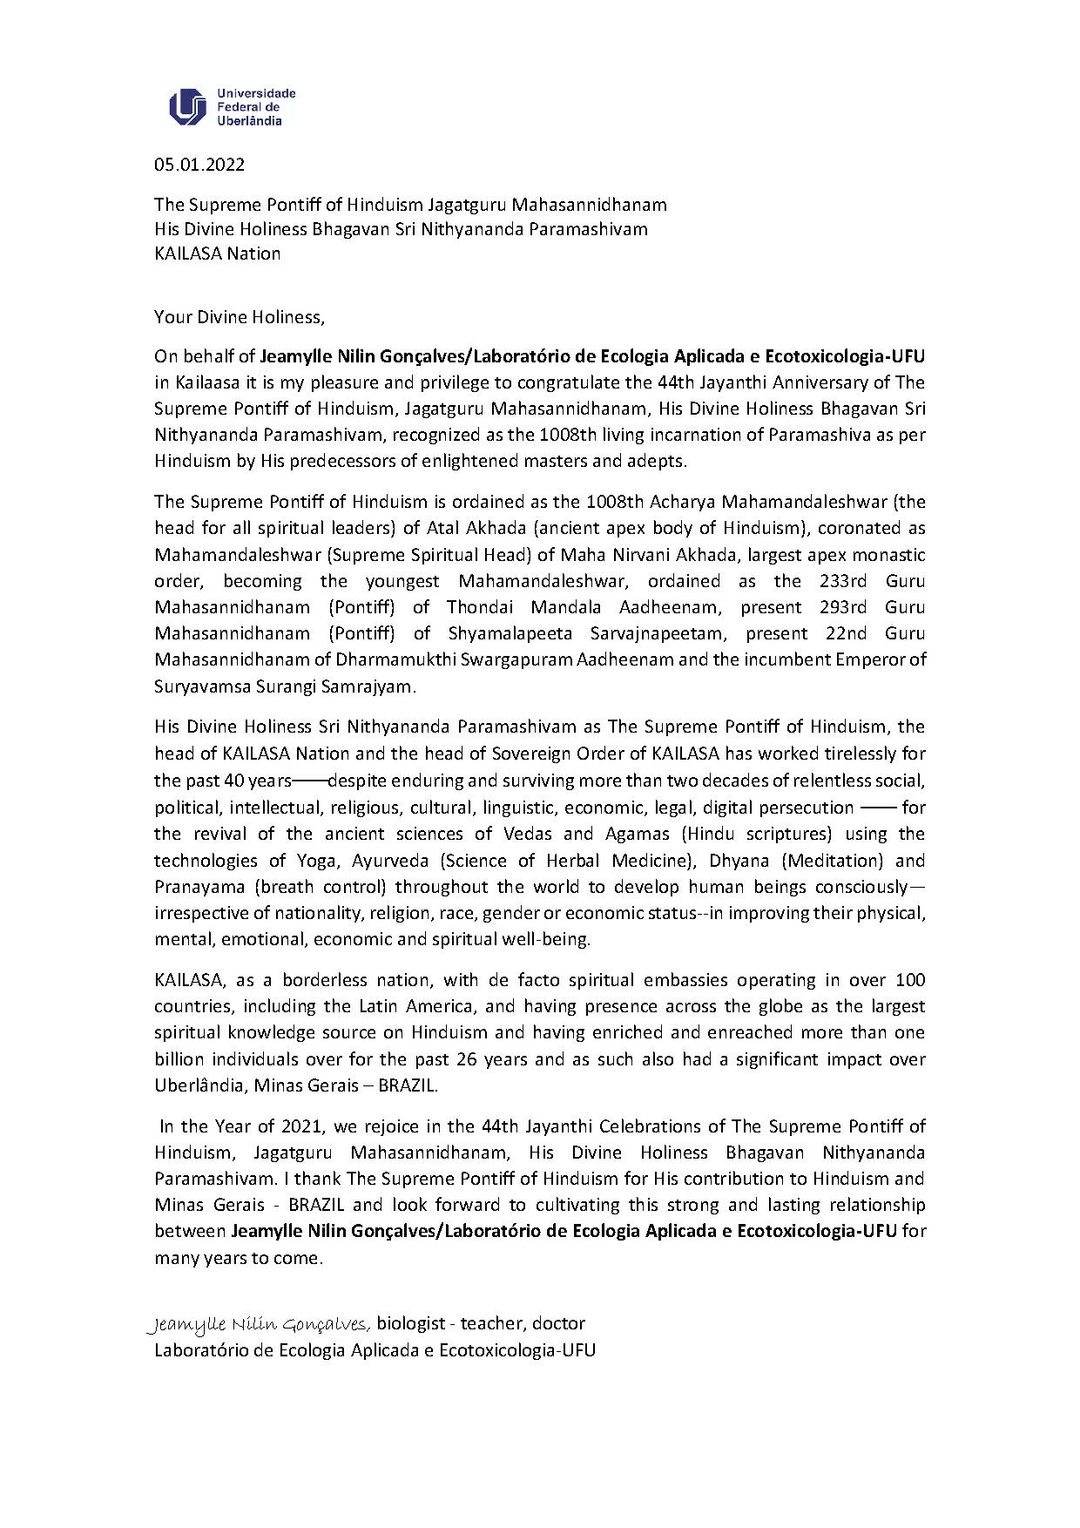 Brazil---Dr.-Jeamylle-Nilin-Gonçalves---05-Jan-2021-(Proclamation)-1KwRjGo-m6GPRg0ytHv9CD5RVCAyly5by.pdf